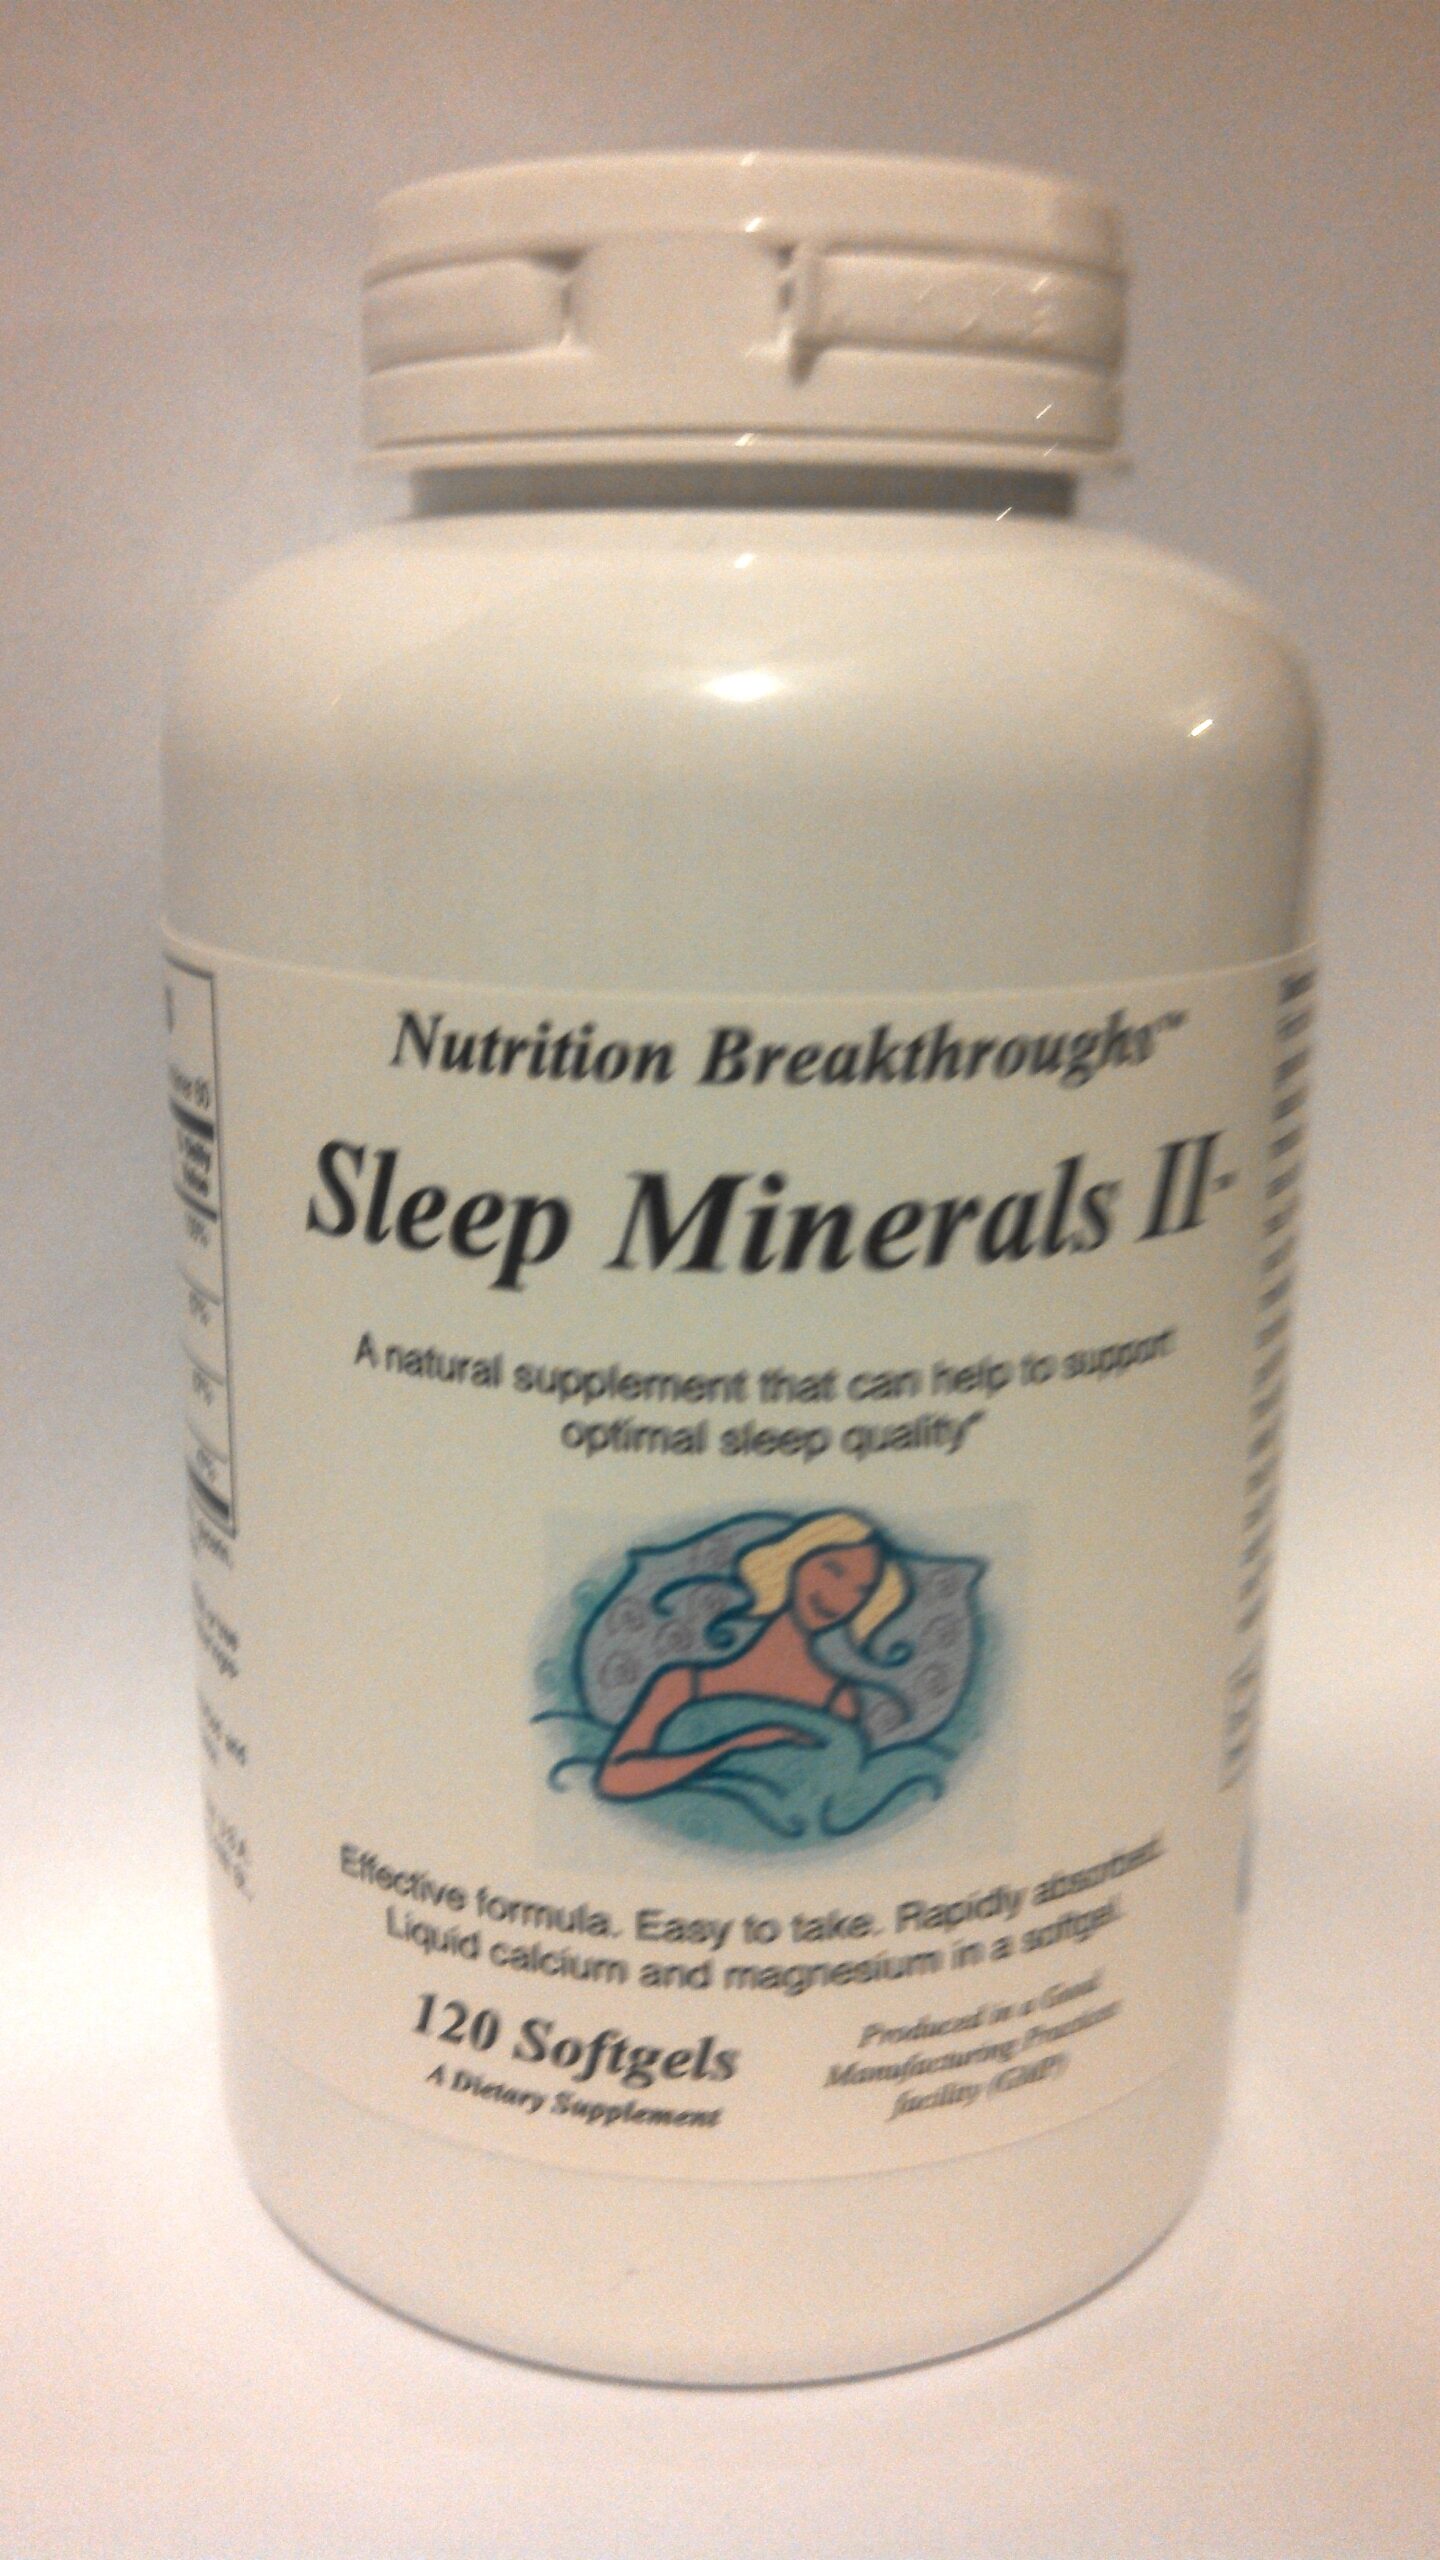 Sleep Minerals II